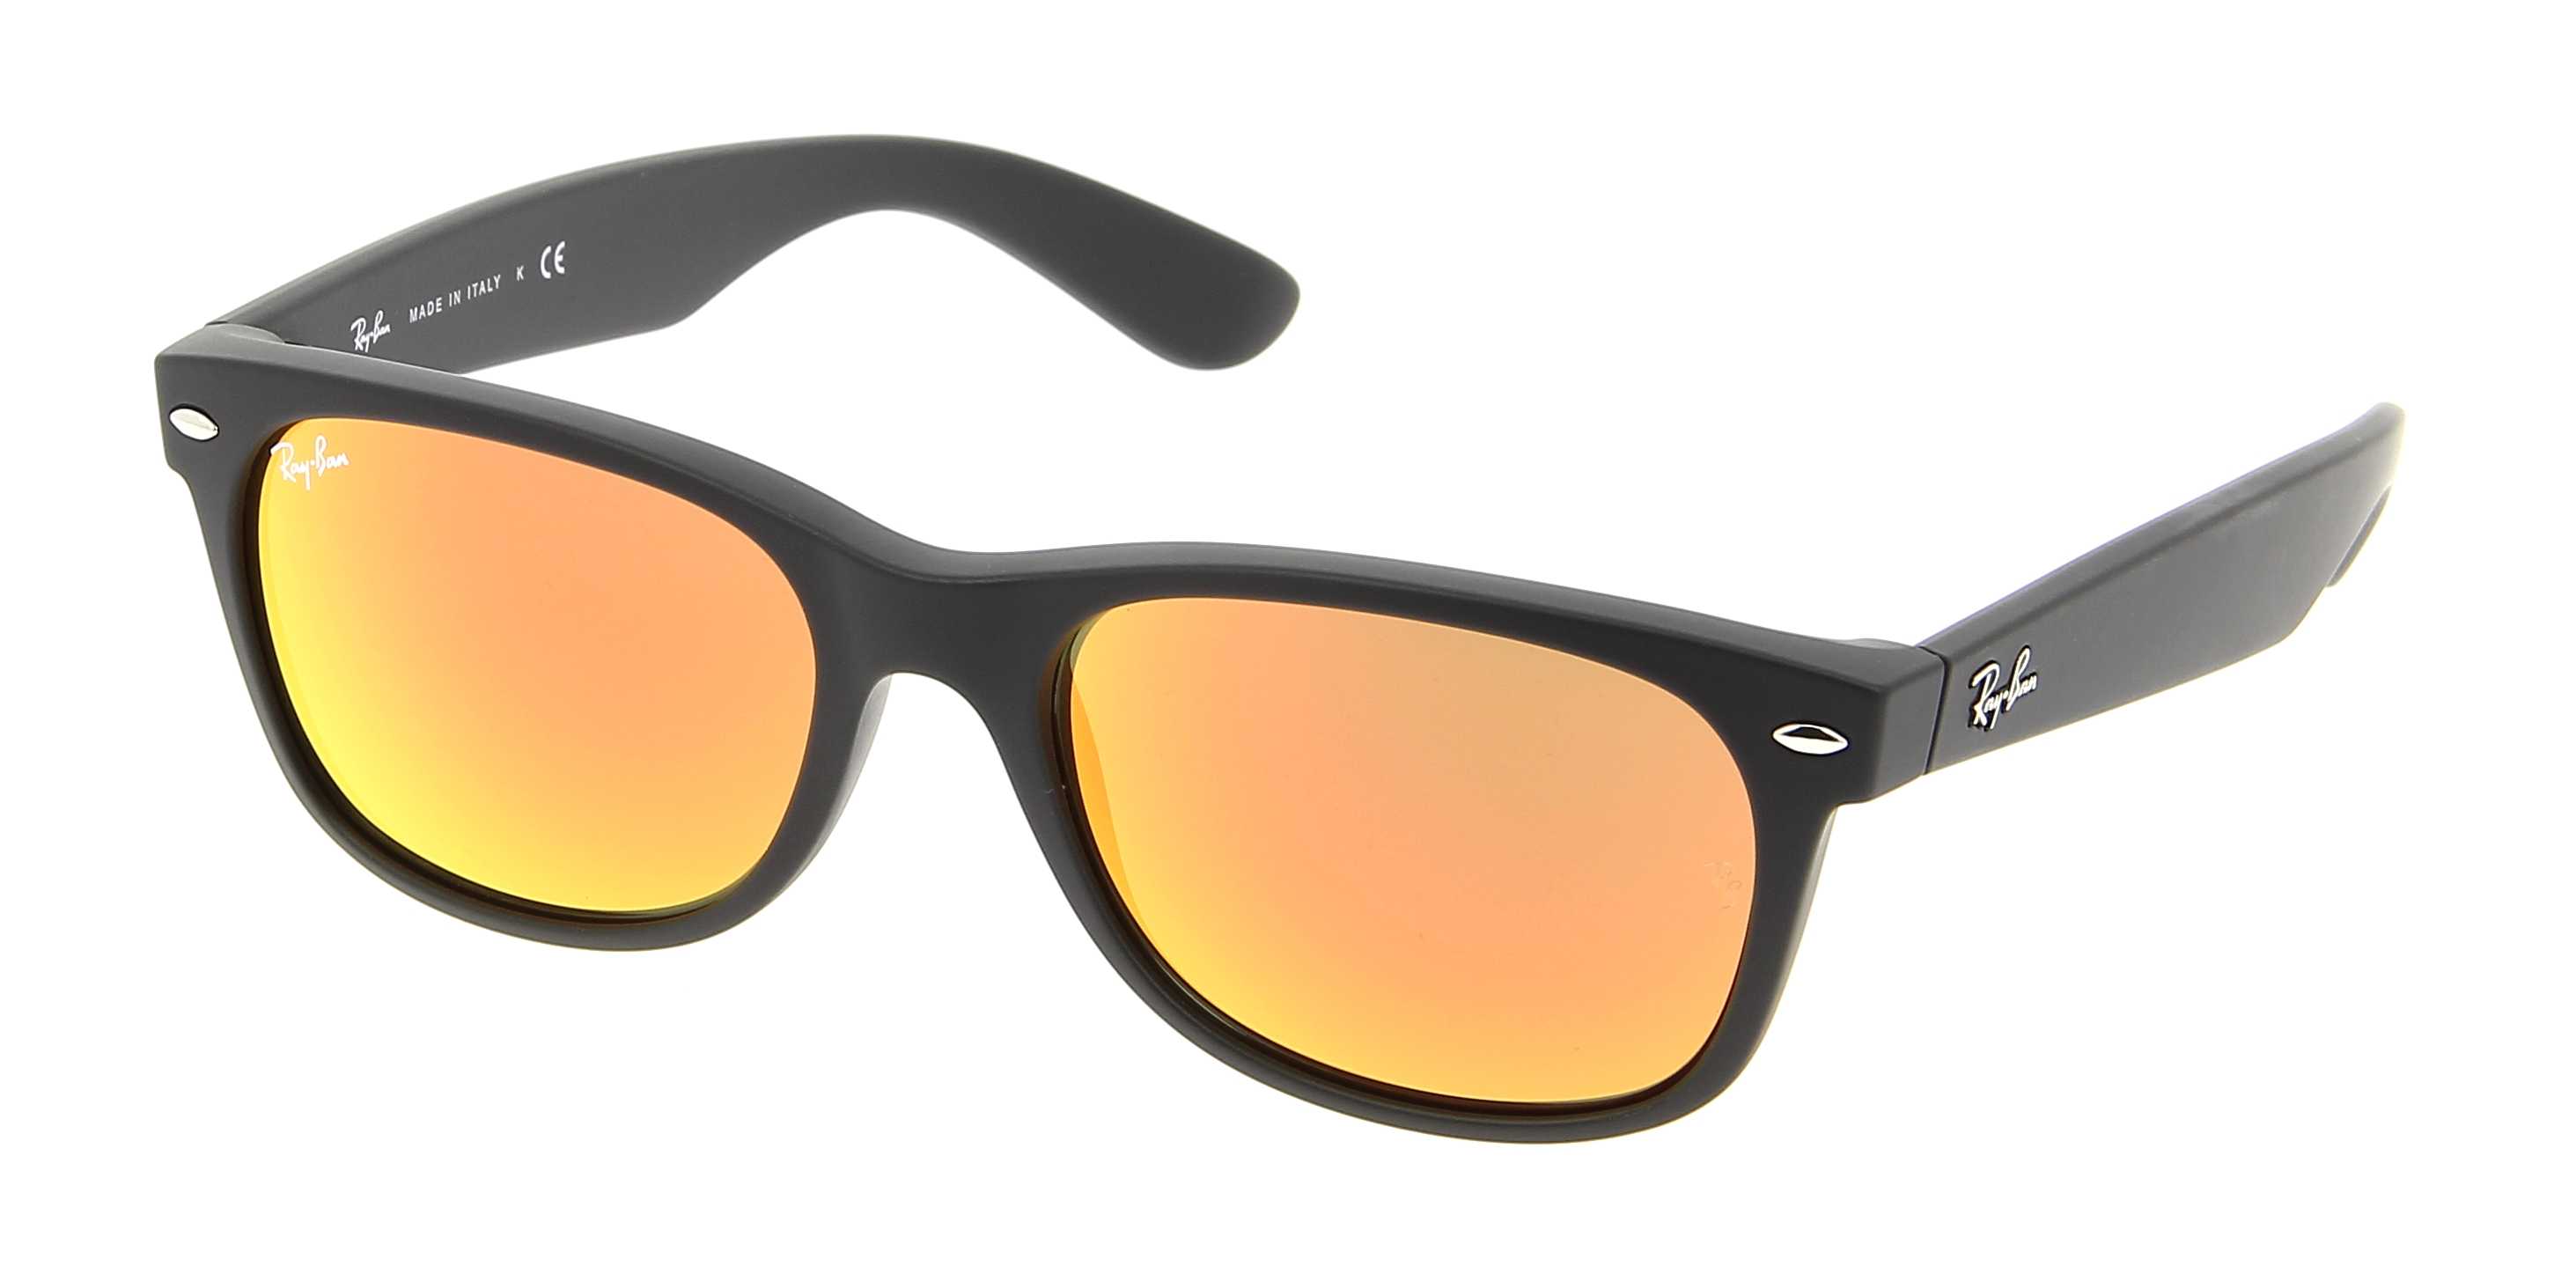 Sunglasses RAY-BAN Wayfarer RB 2132 622/69 52/18 Unisex NOIR MAT